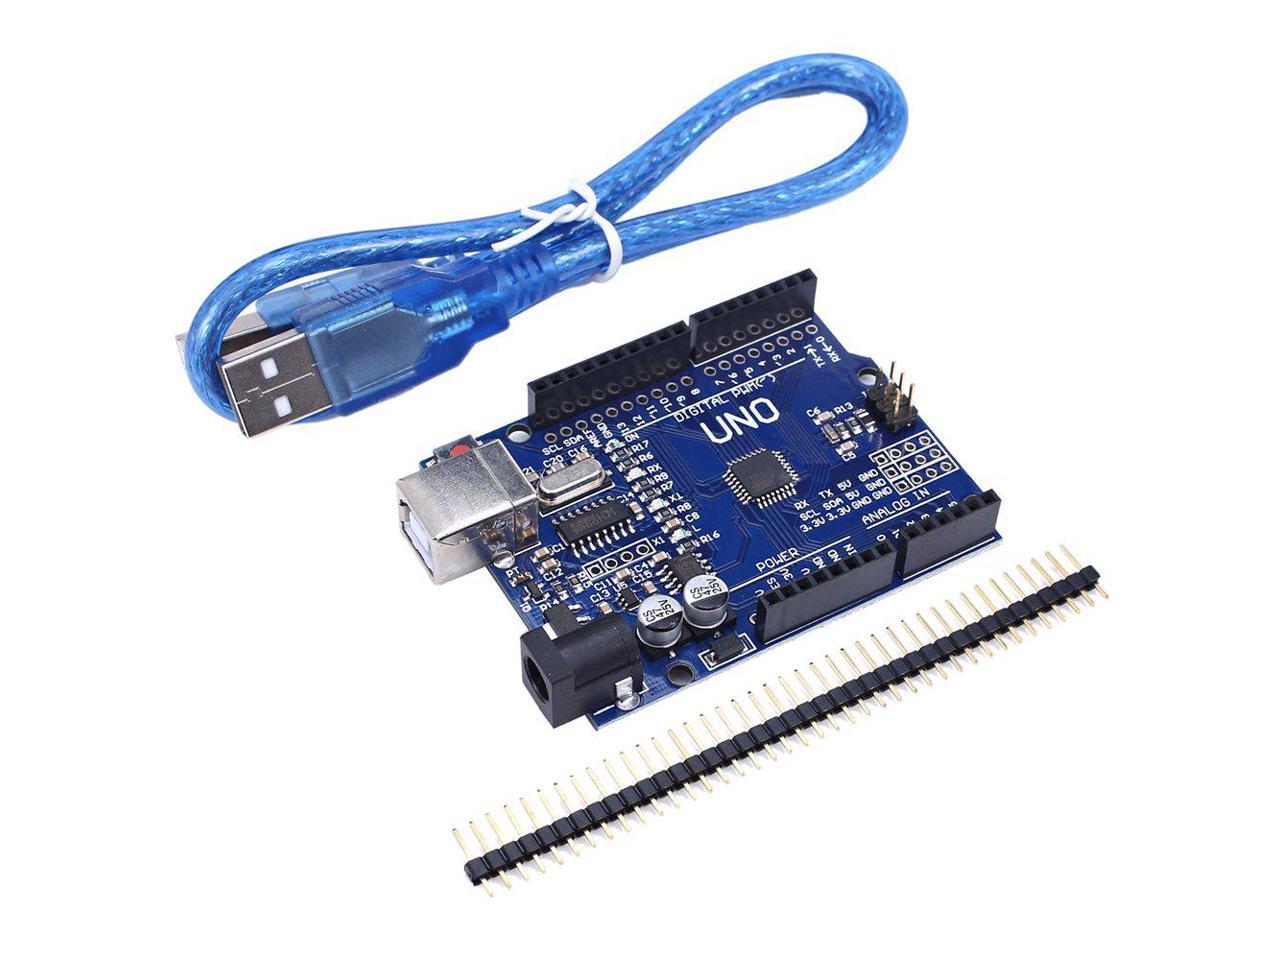 UNO R3 ATmega328P Development Board For Arduino Compatible+USB Cable NEW